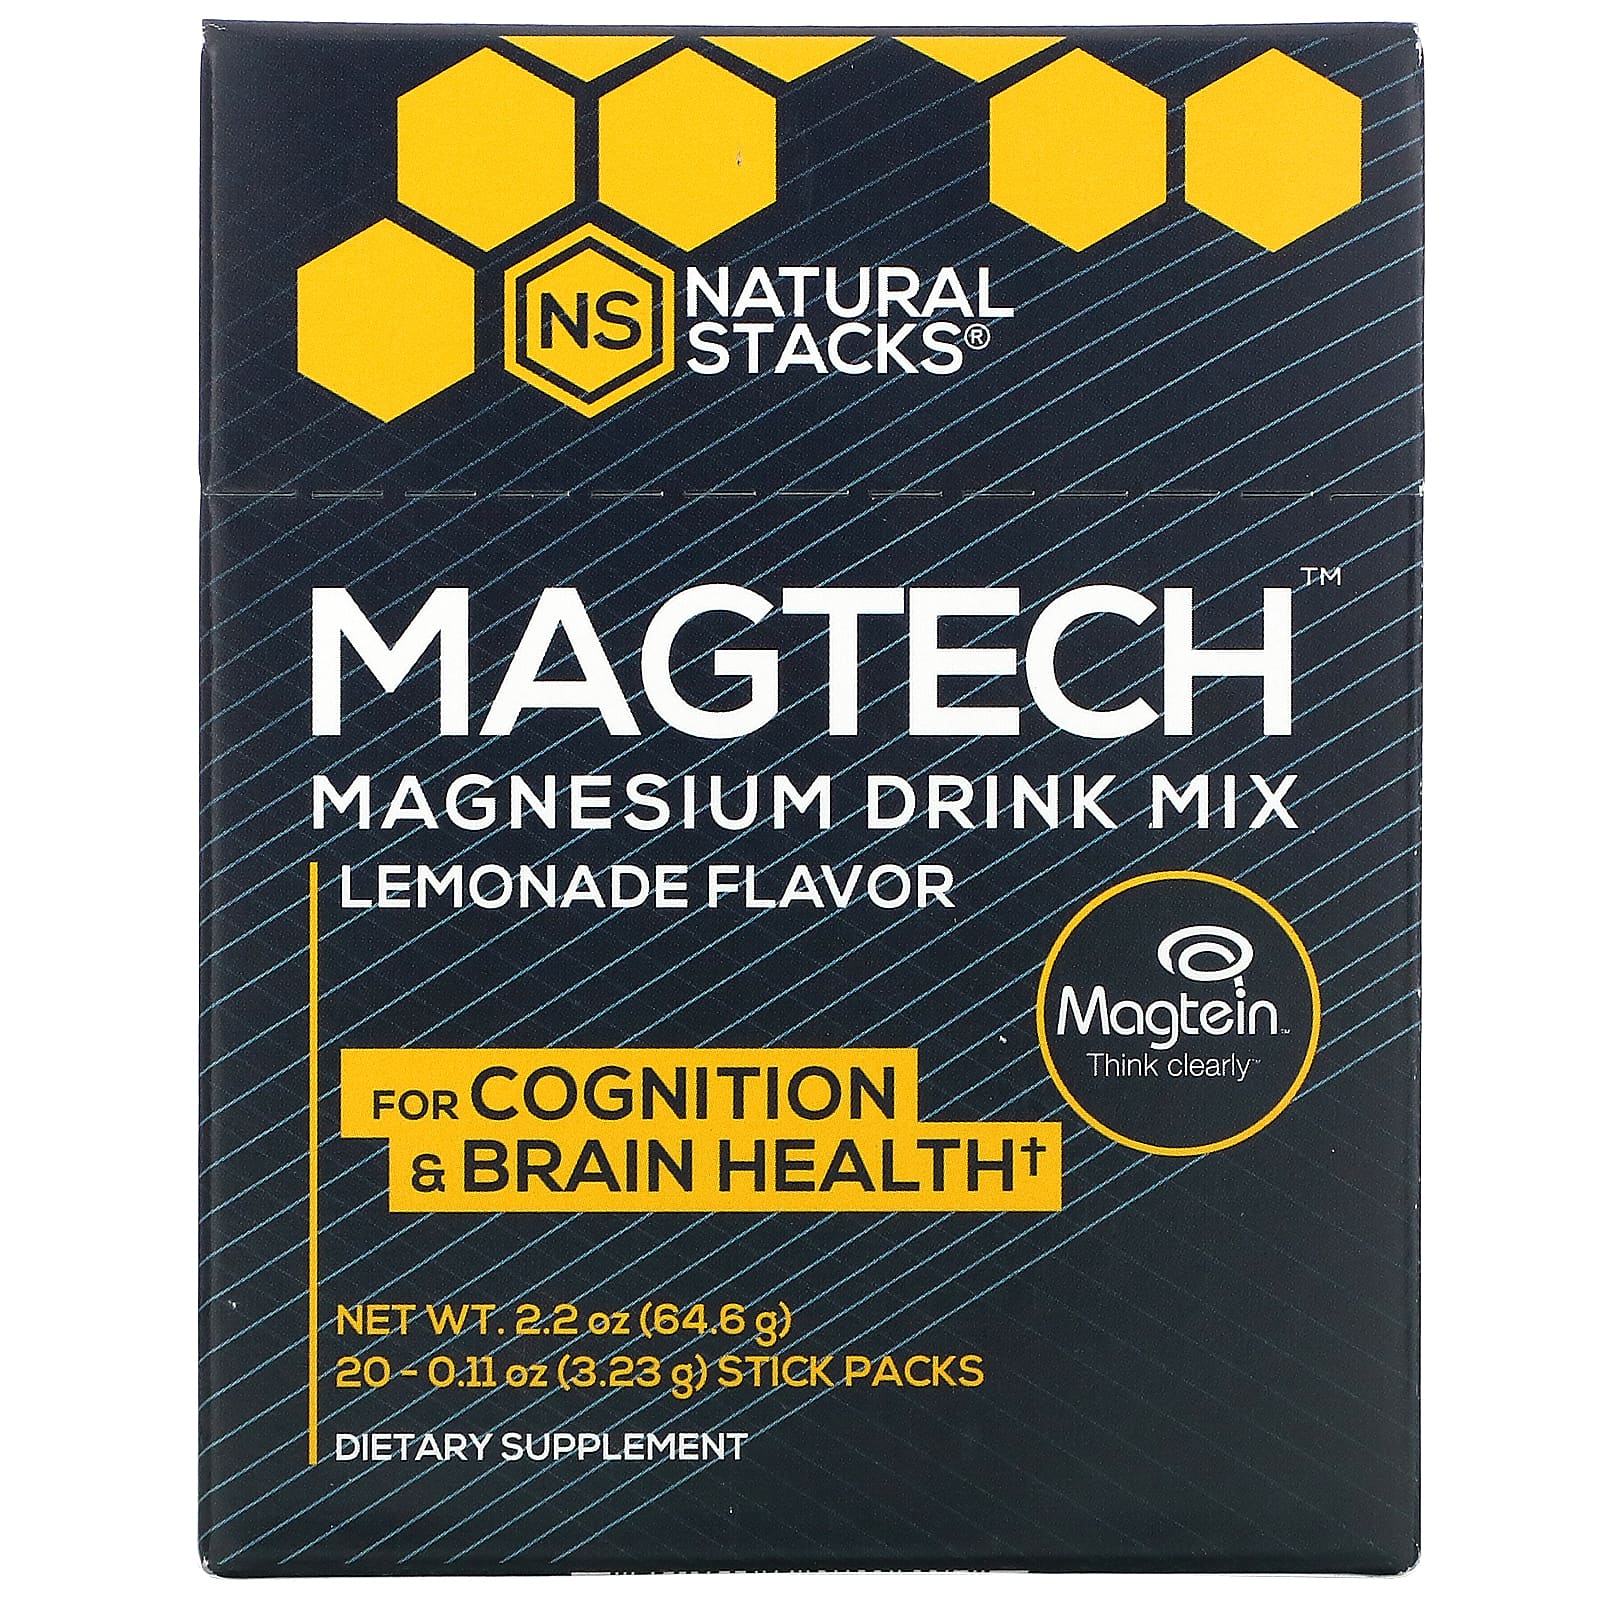 네츄럴스택스 <b>MagTech 마그네슘 드링크 믹스</b> 레모네이드 스틱팩 20개입 3.23g